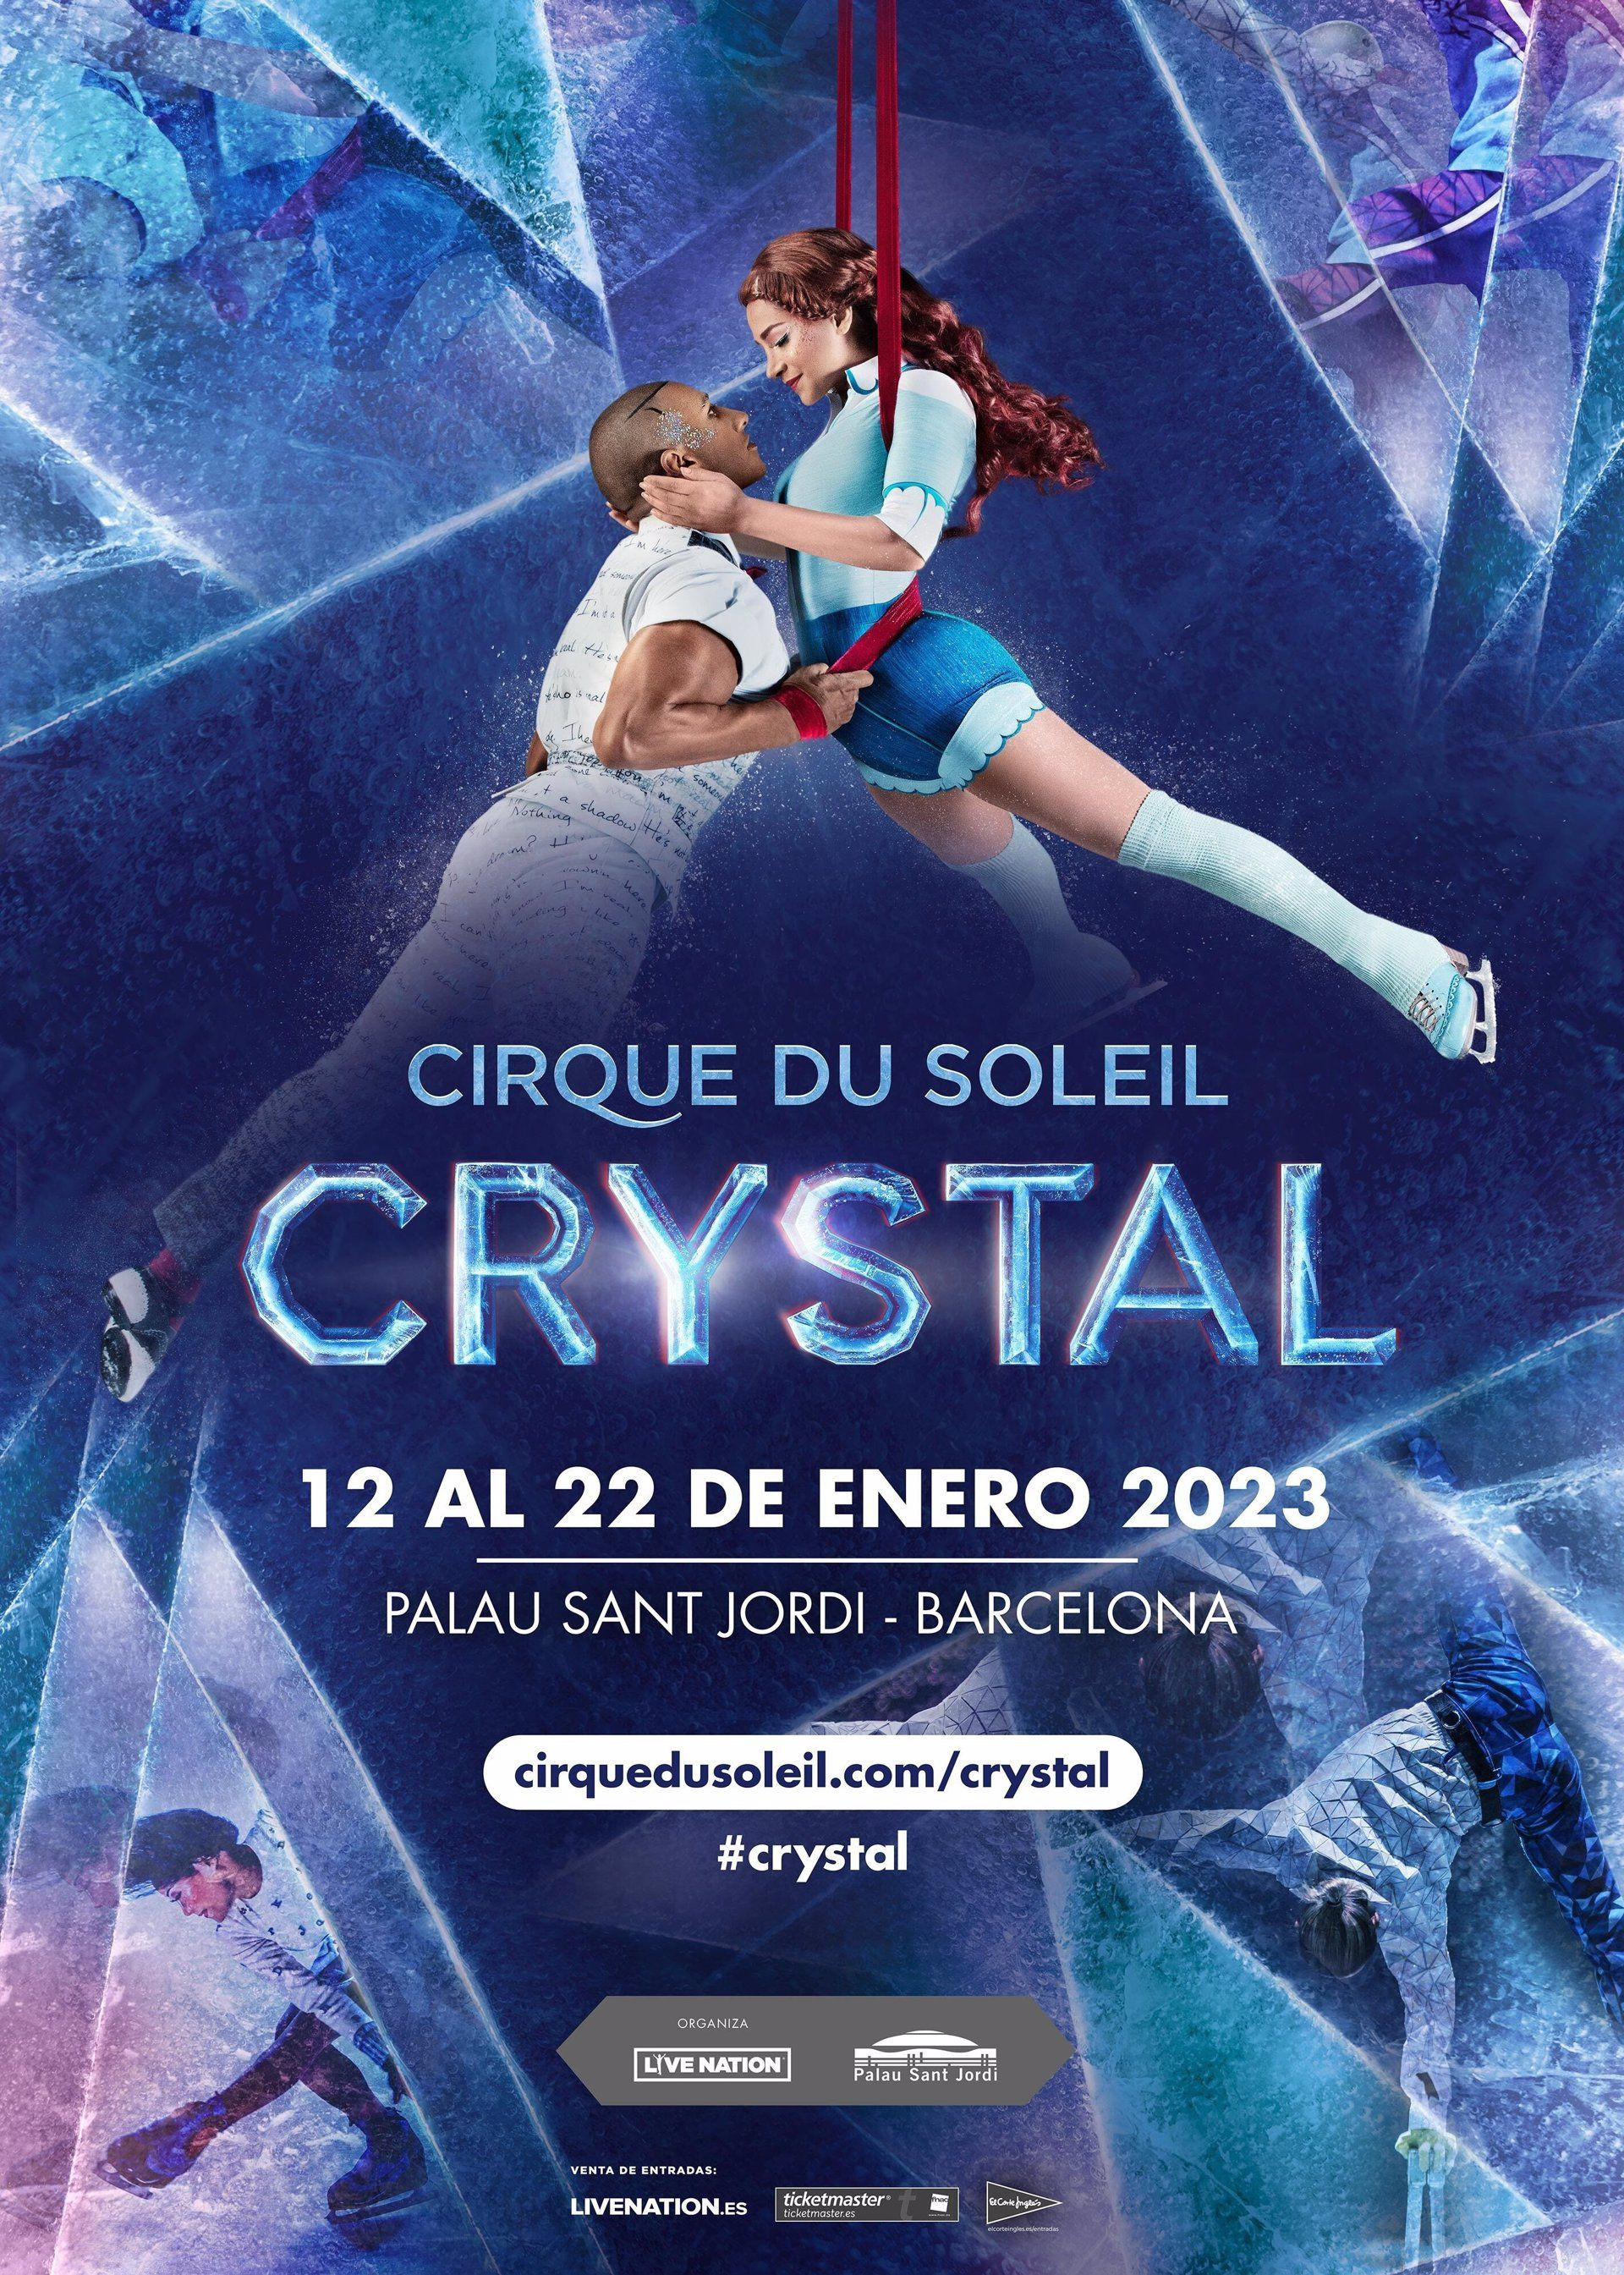 Imagen promocional del nuevo espectáculo del Cirque du Soleil